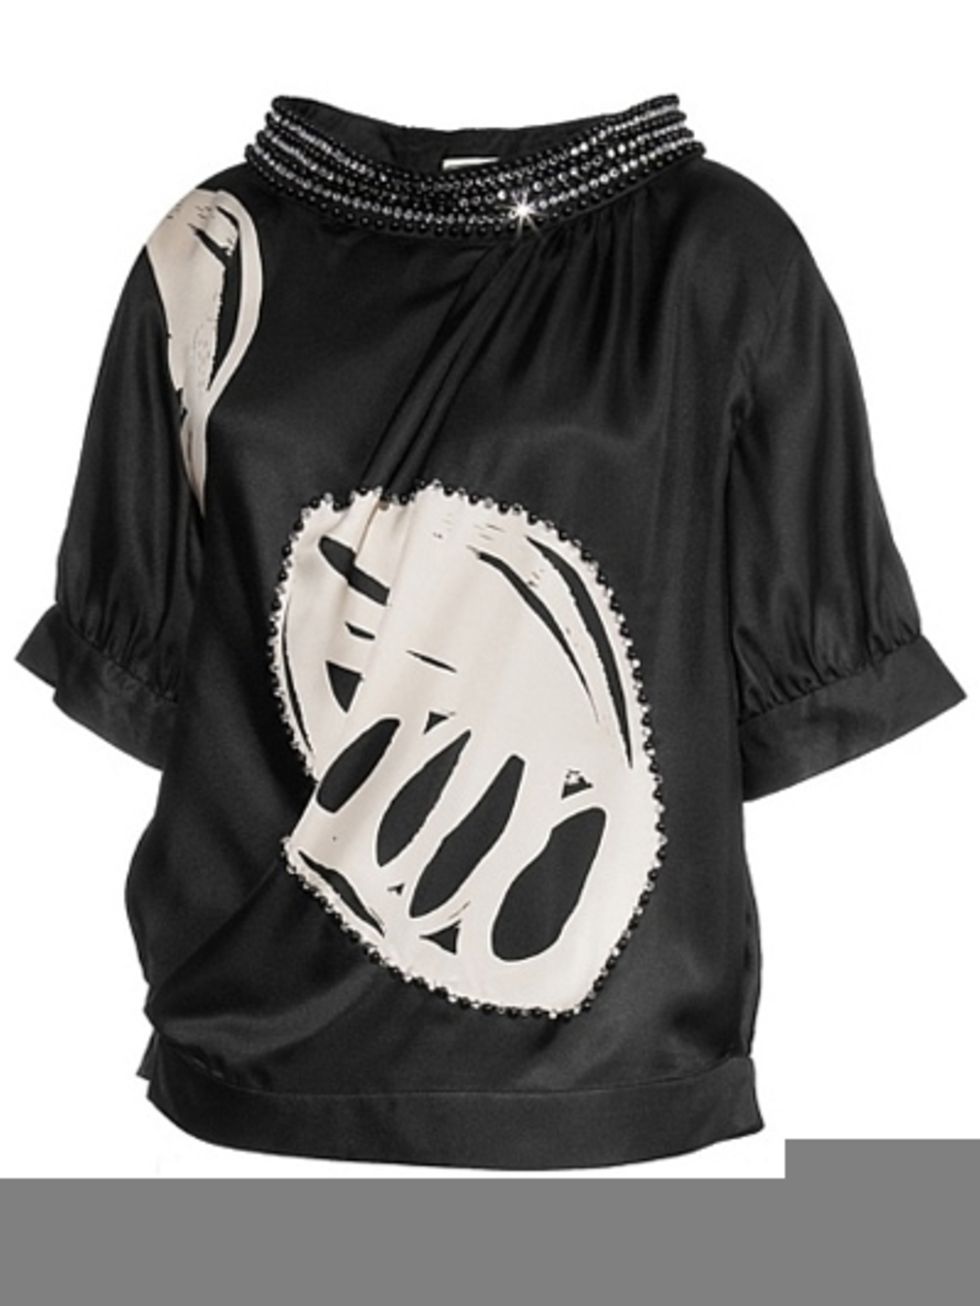 Product, Sleeve, White, Neck, Black, Active shirt, Black-and-white, Long-sleeved t-shirt, Sweatshirt, Top, 